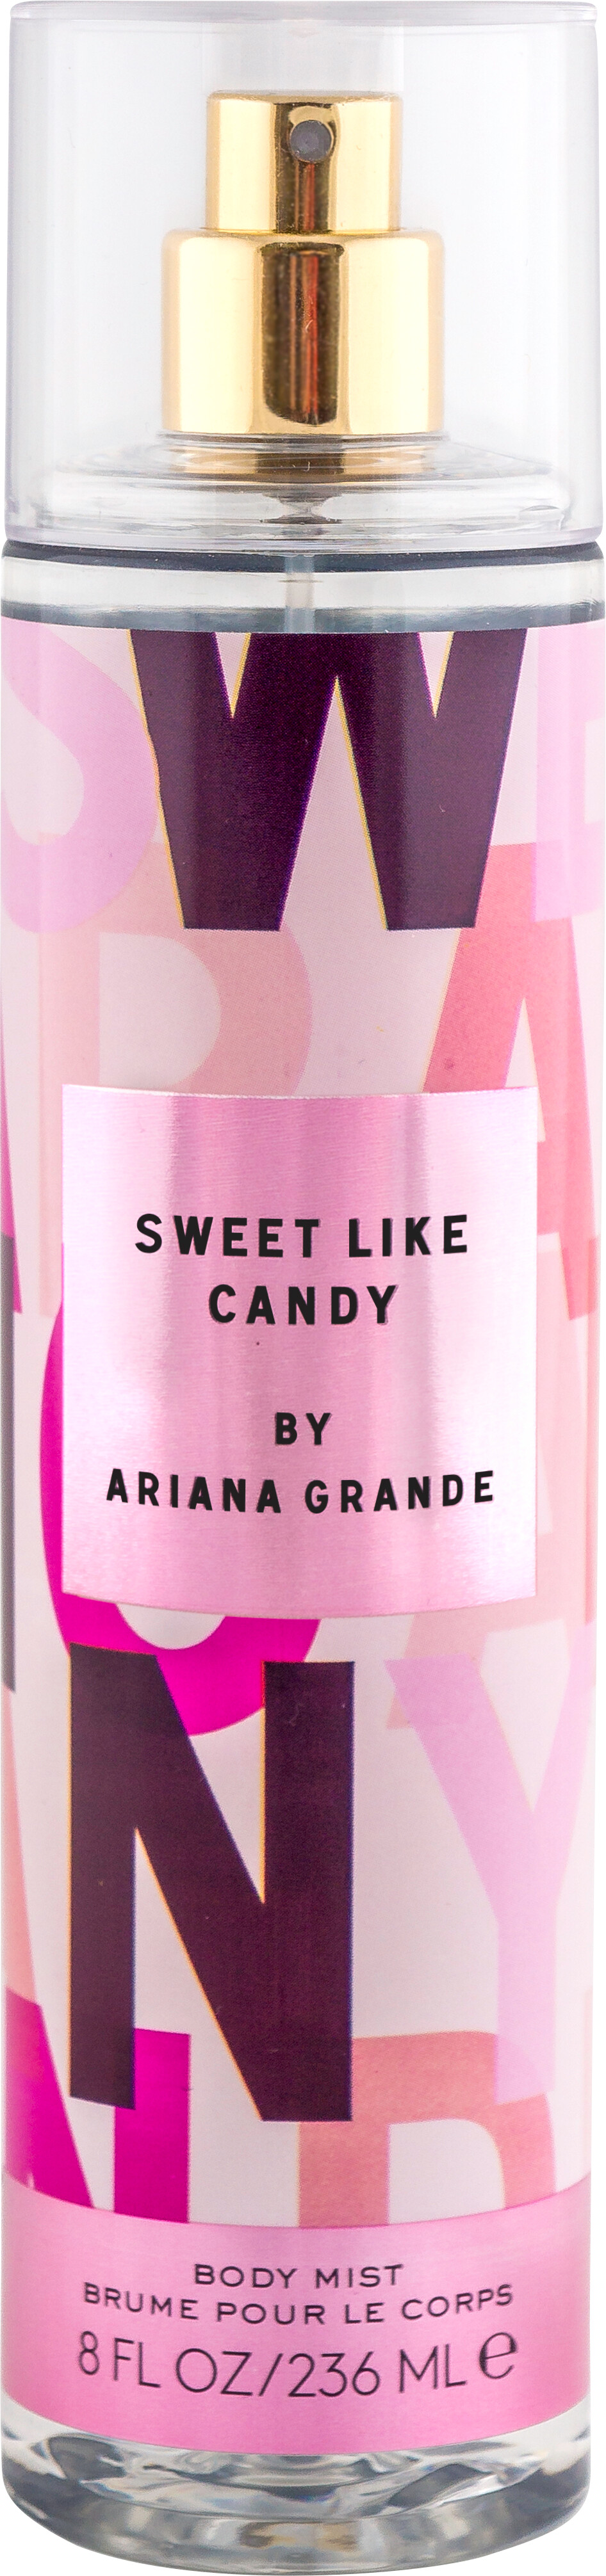 ariana grande sweet like candy